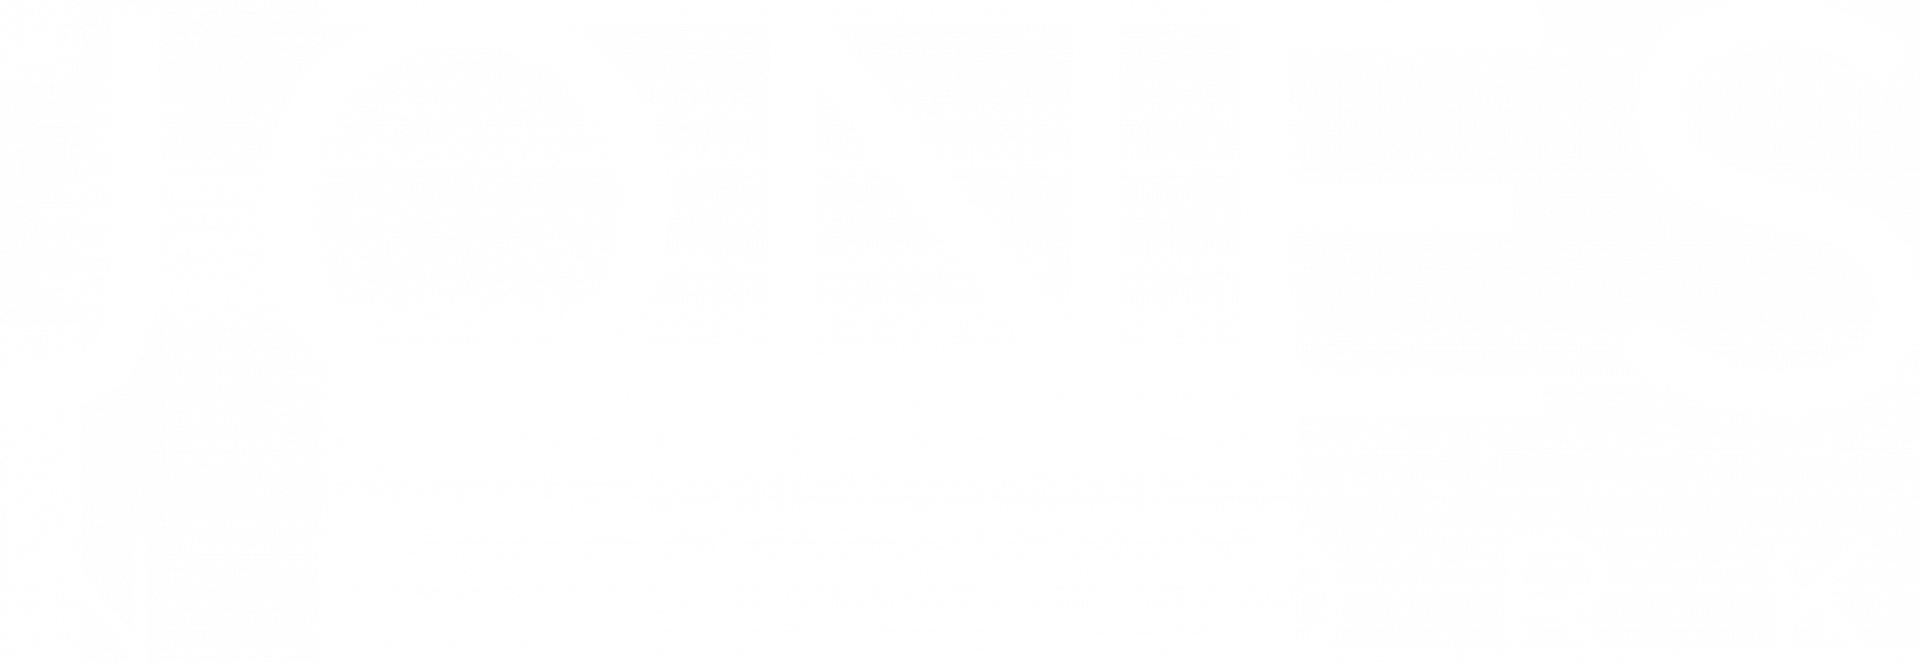 Jones New York Eyewear